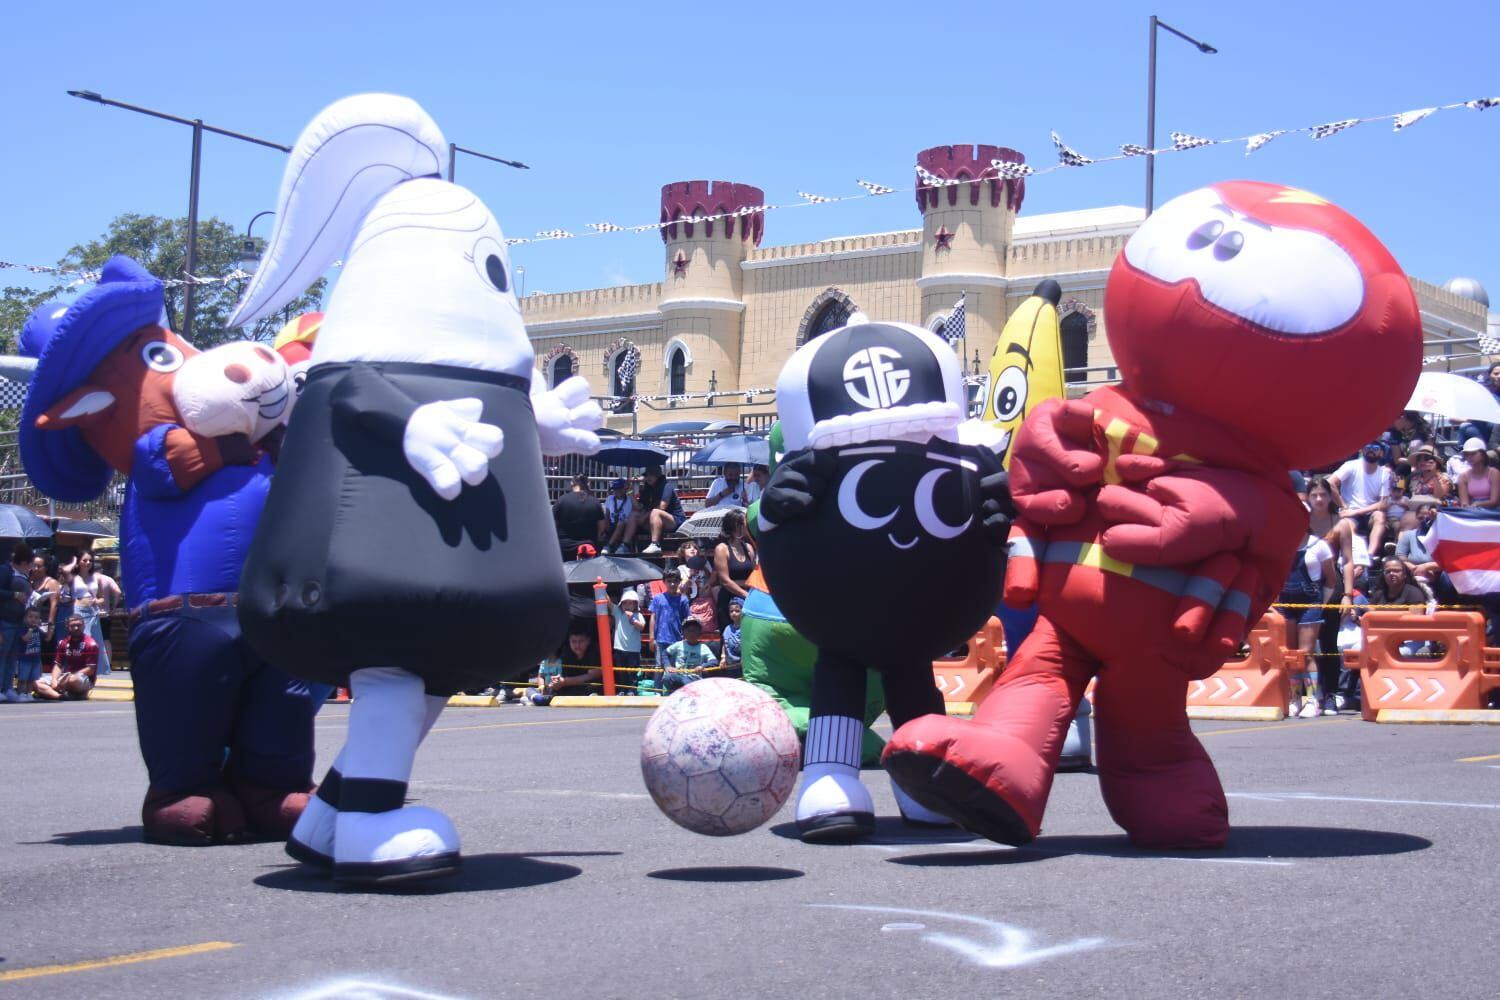 La mejenga de fútbol en el Campeonato de Personajes del Museo de los Niños, es una de las actividades más coloridas y llenas de diversión del evento.